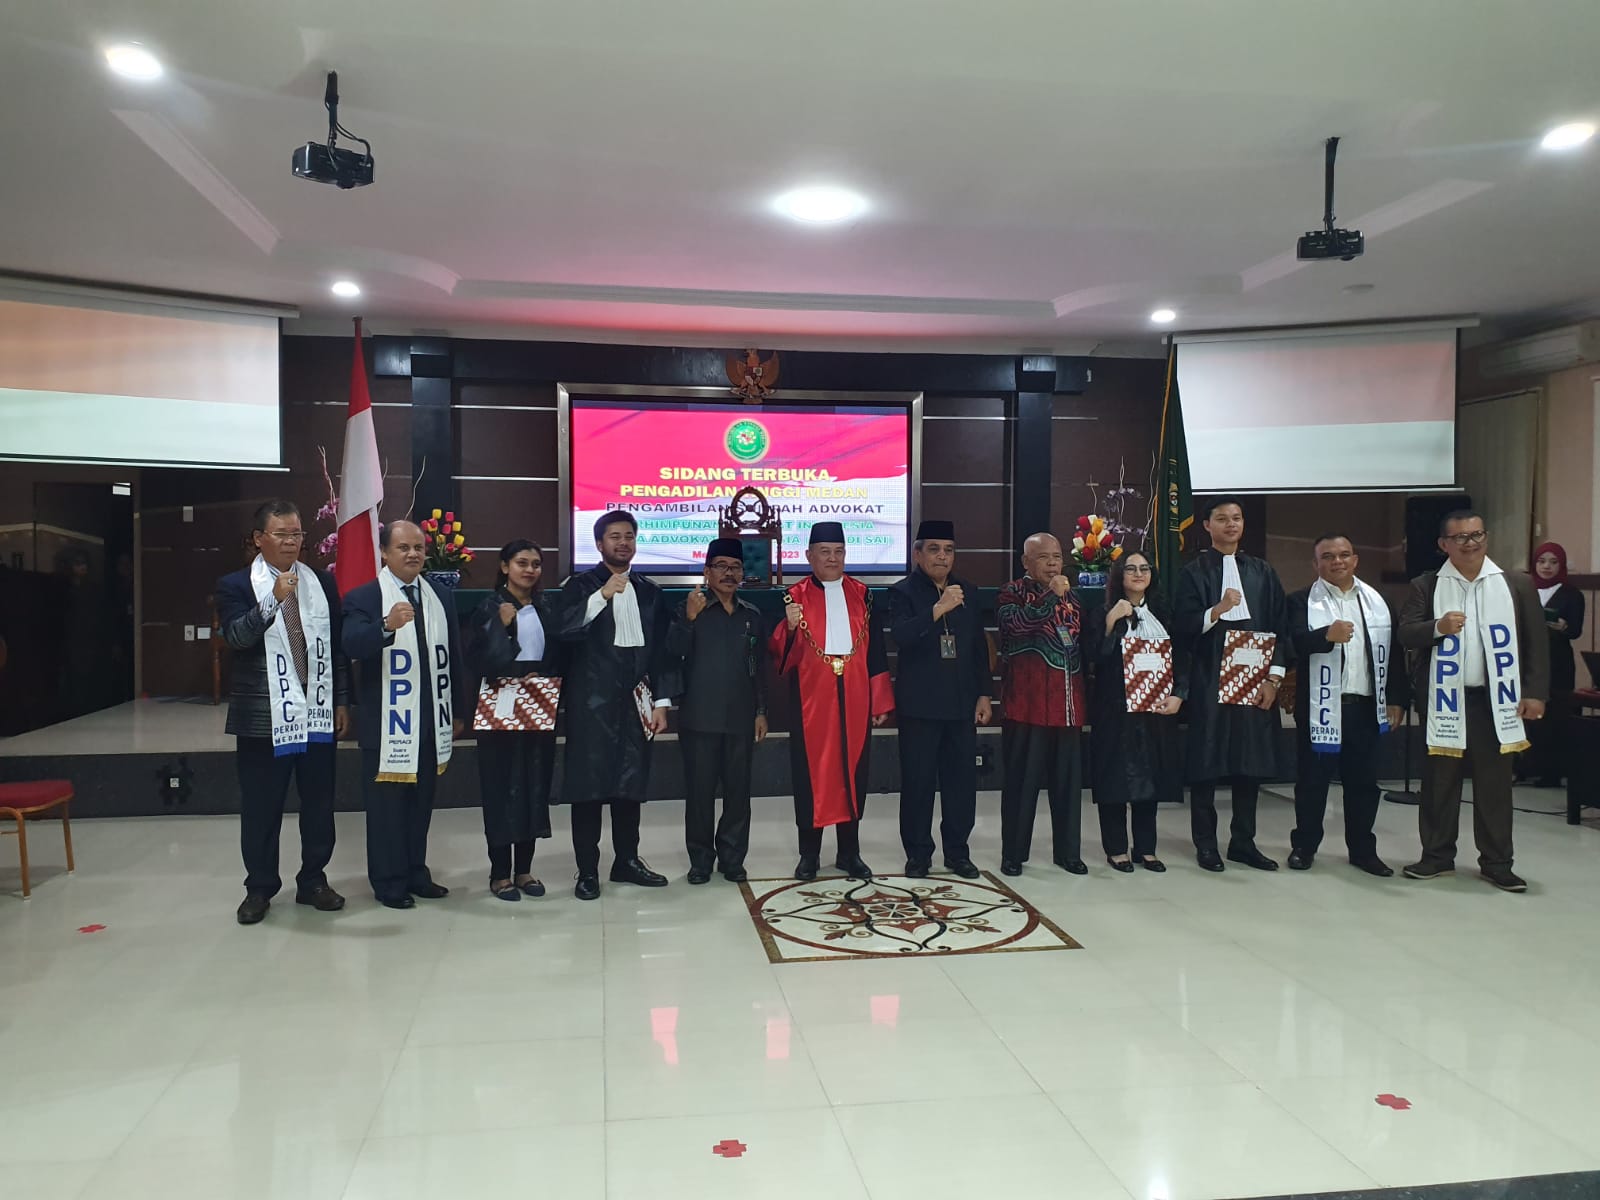 DPC PERADI Medan telah melaksanakan Pengangkatan & Penyumpahan di Wilayah Hukum Pengadilan Tinggi Medan, pada tanggal 22 Juni 2023, dengan jumlah peserta yang ikut serta sebanyak 60 orang